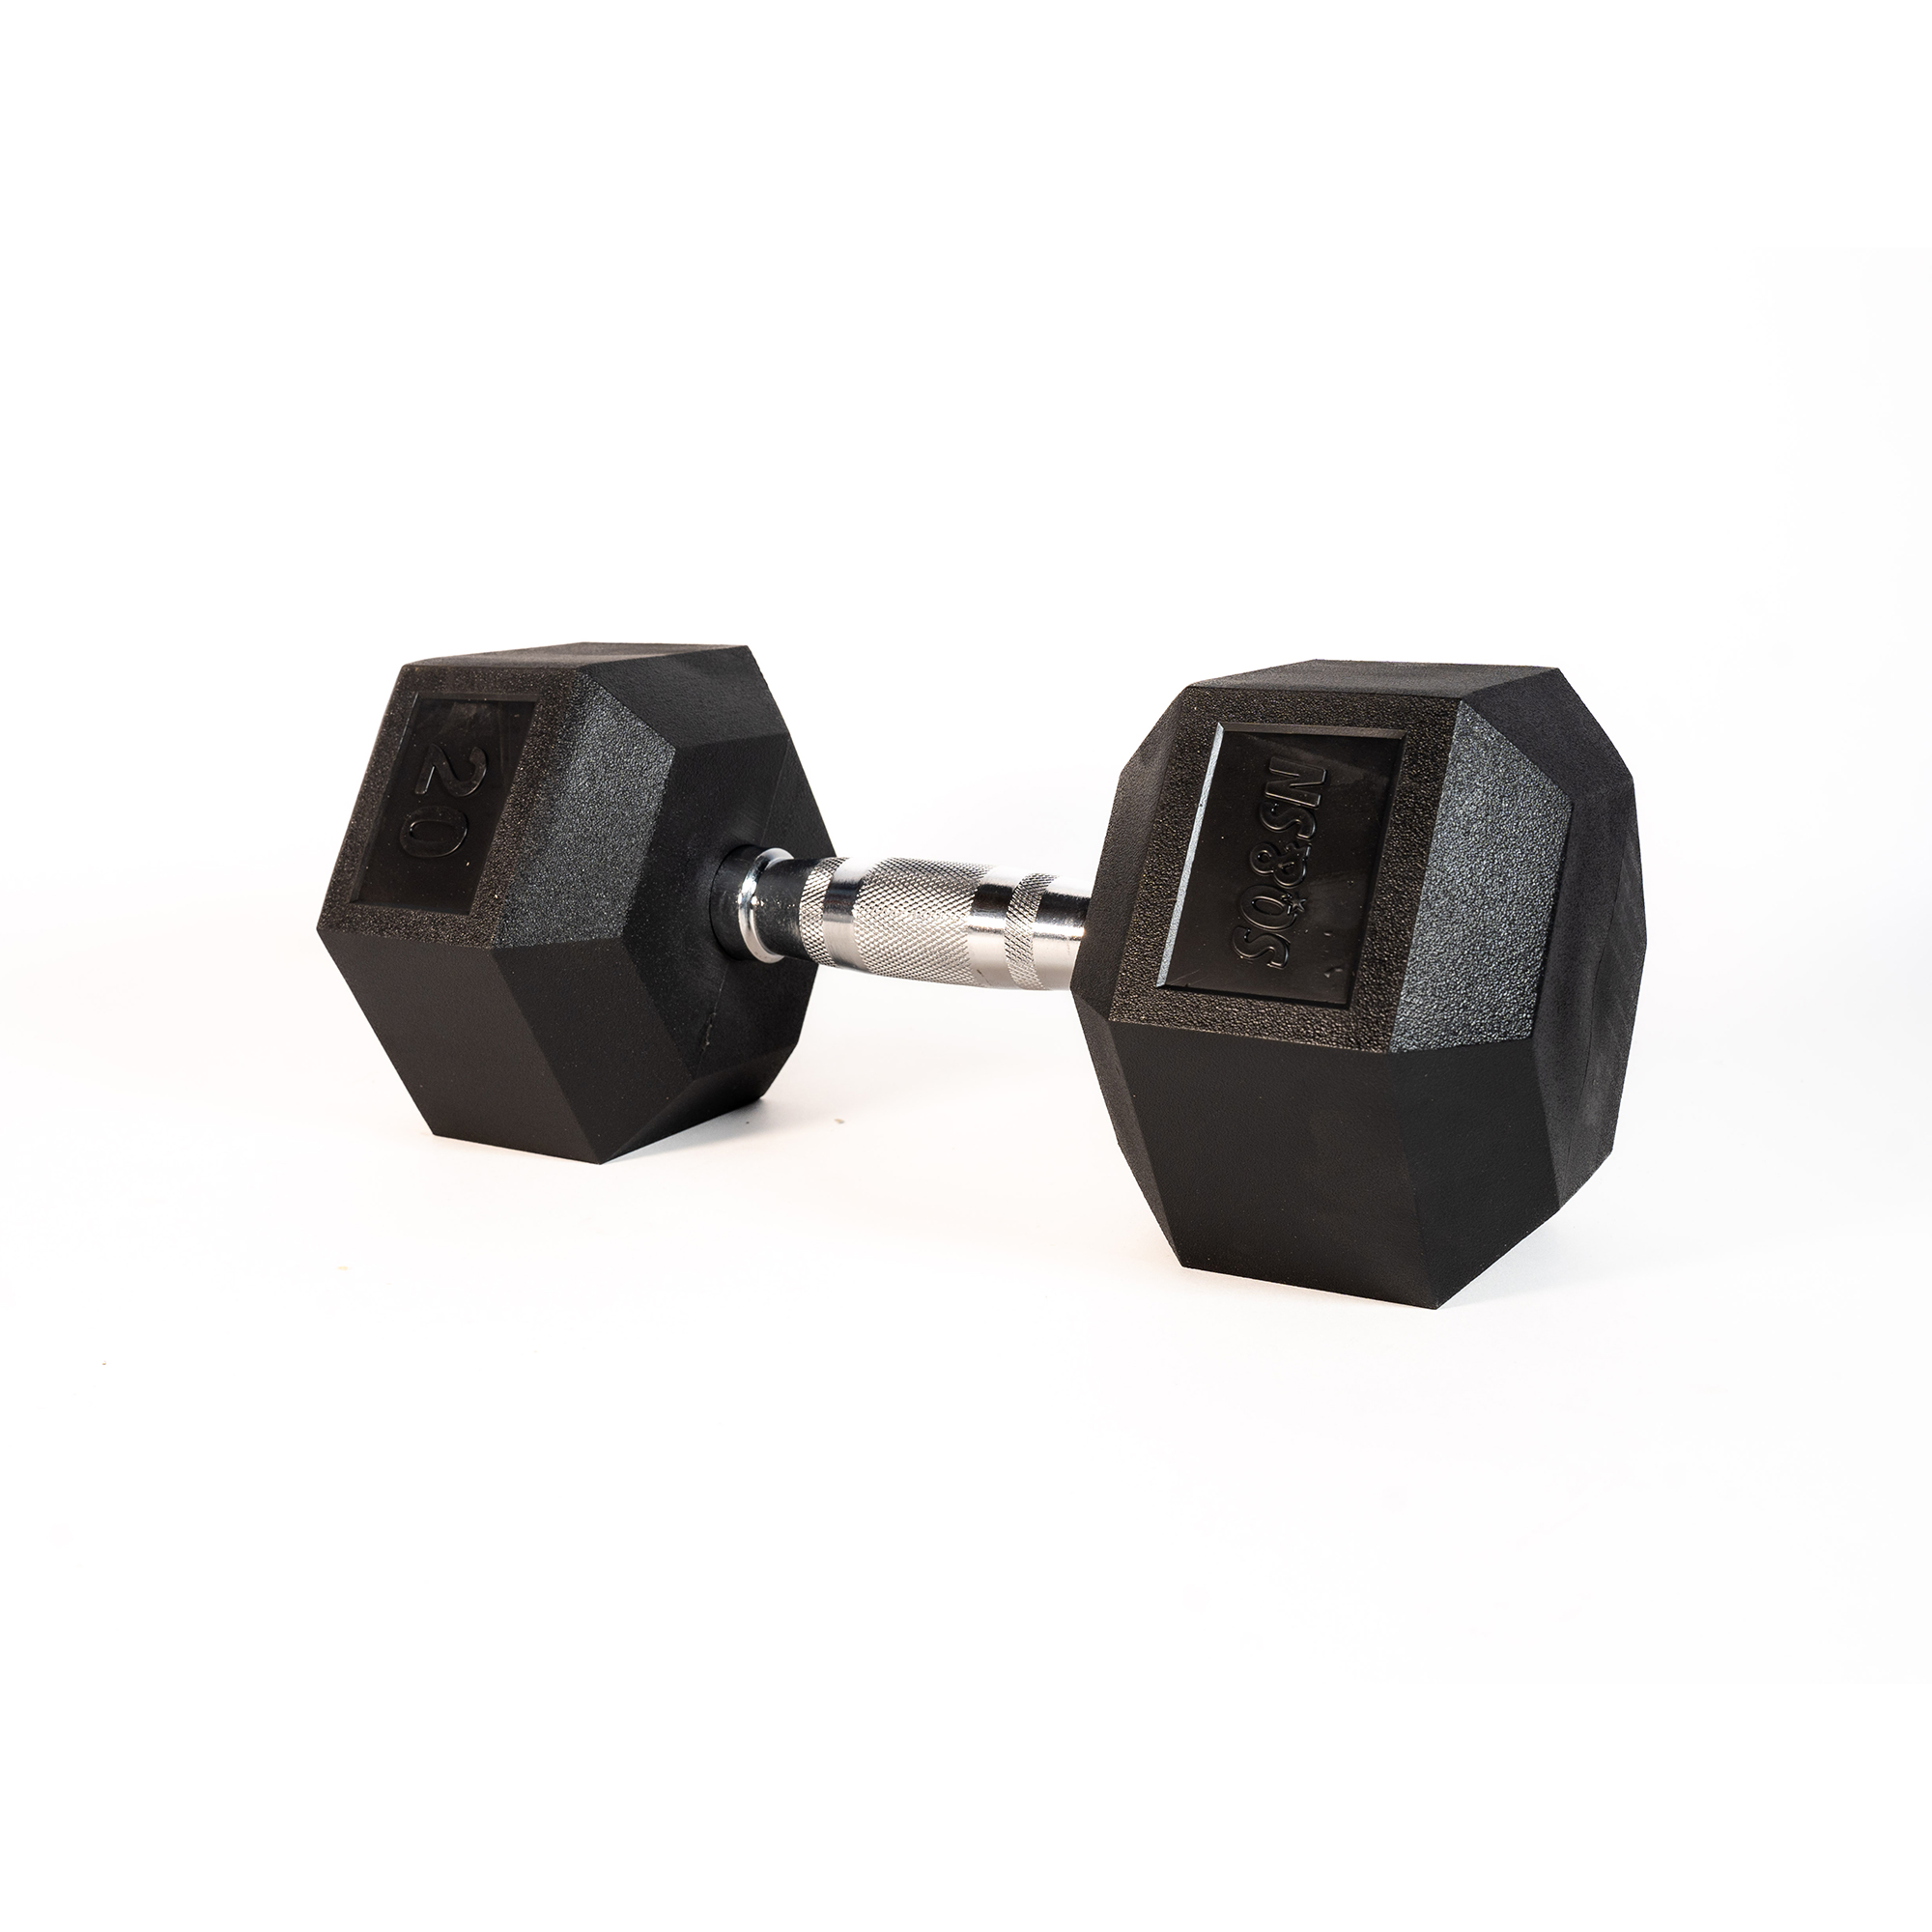 Brug SQ&SN Hexagon Håndvægt (20 kg) med forkromet greb. Udstyr til crossfit træning, styrketræning og funktionel træning til en forbedret oplevelse